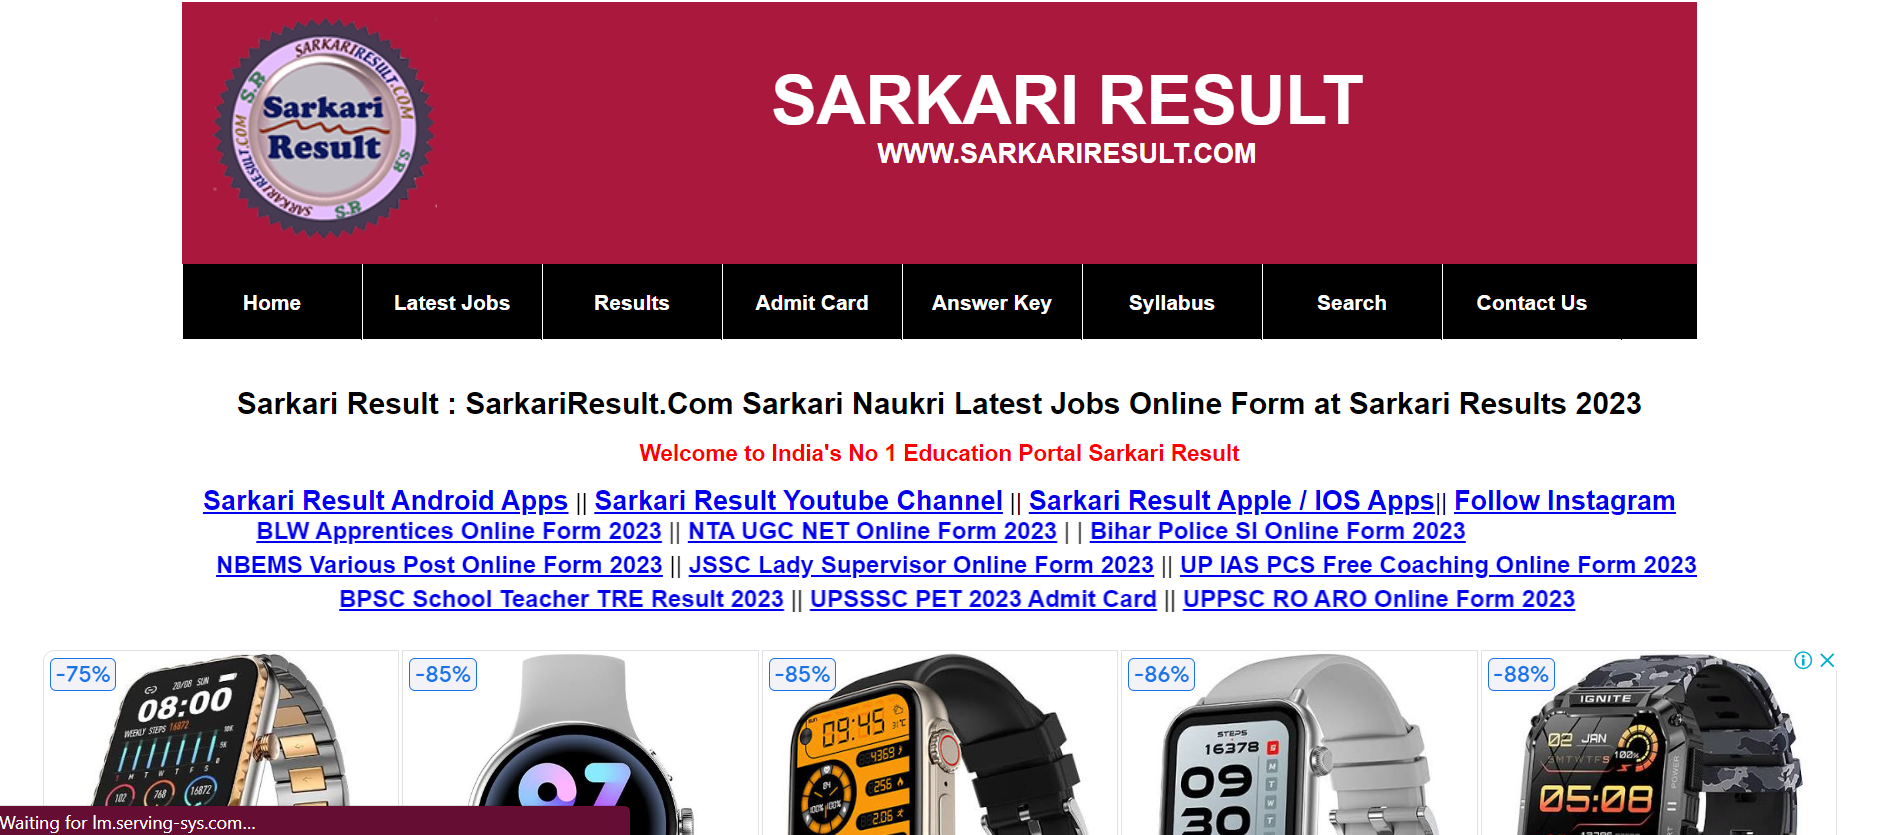 sarkari result website not working